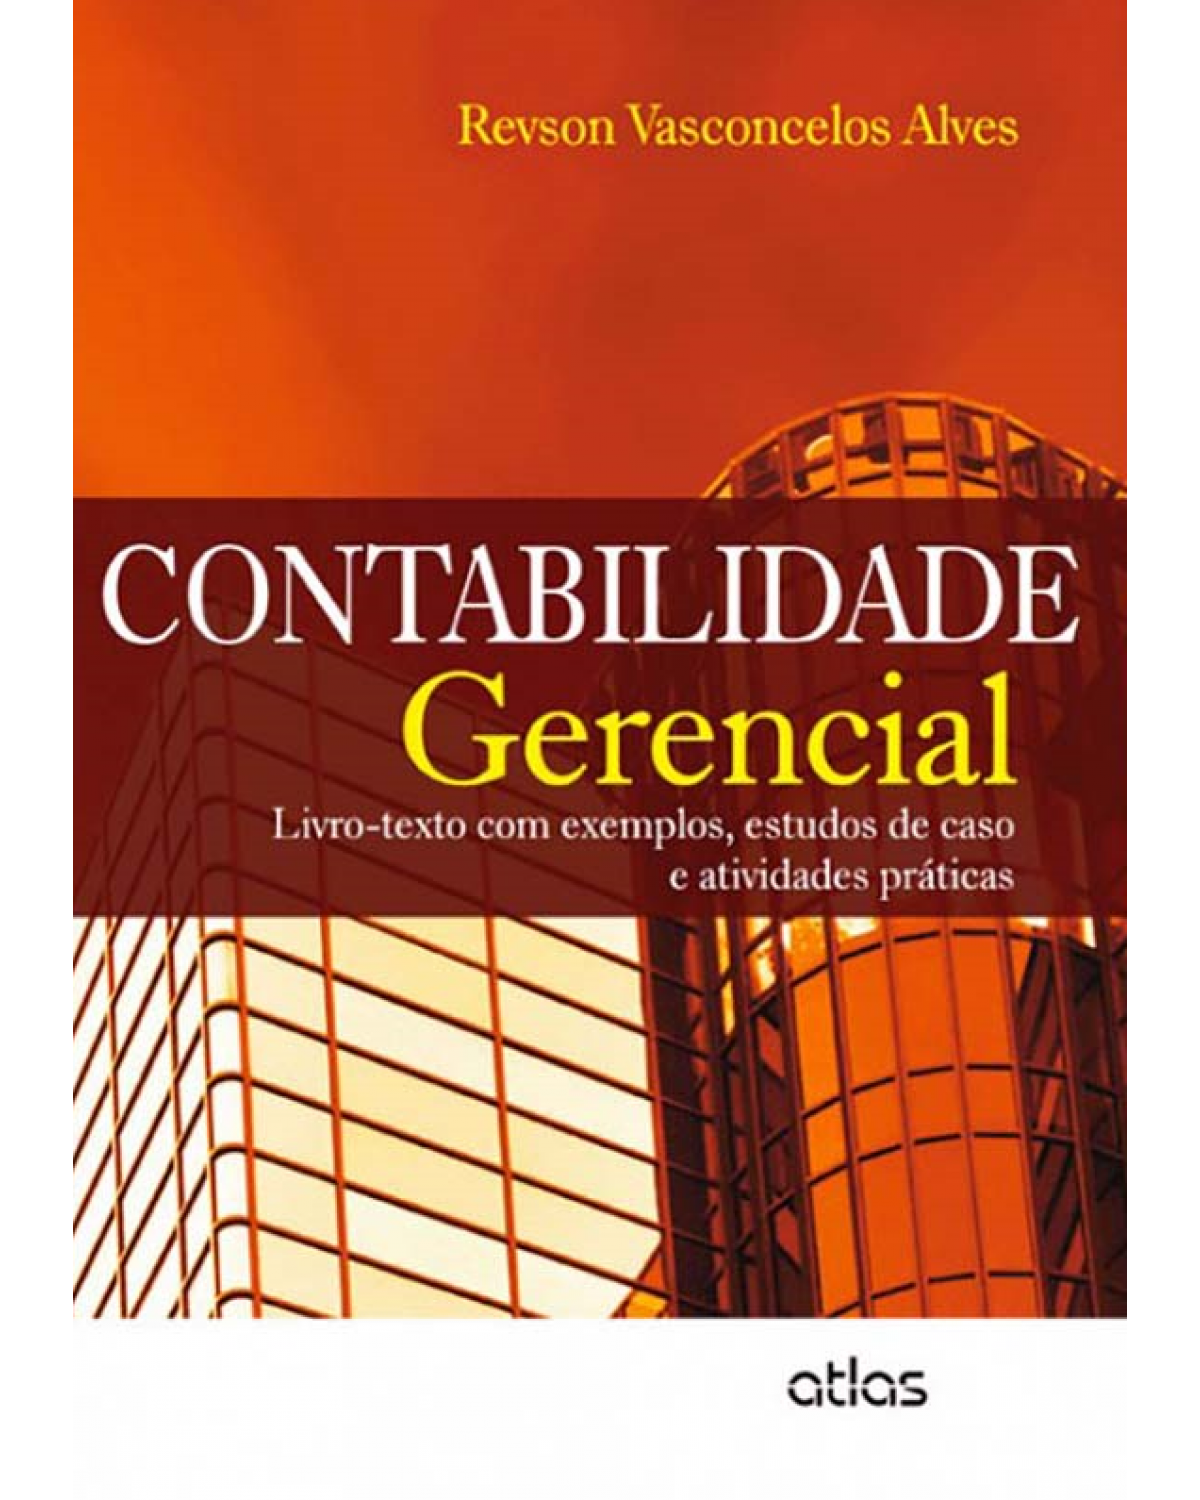 Contabilidade gerencial - Livro-texto com exemplos, estudos de caso e atividades práticas - 1ª Edição | 2013